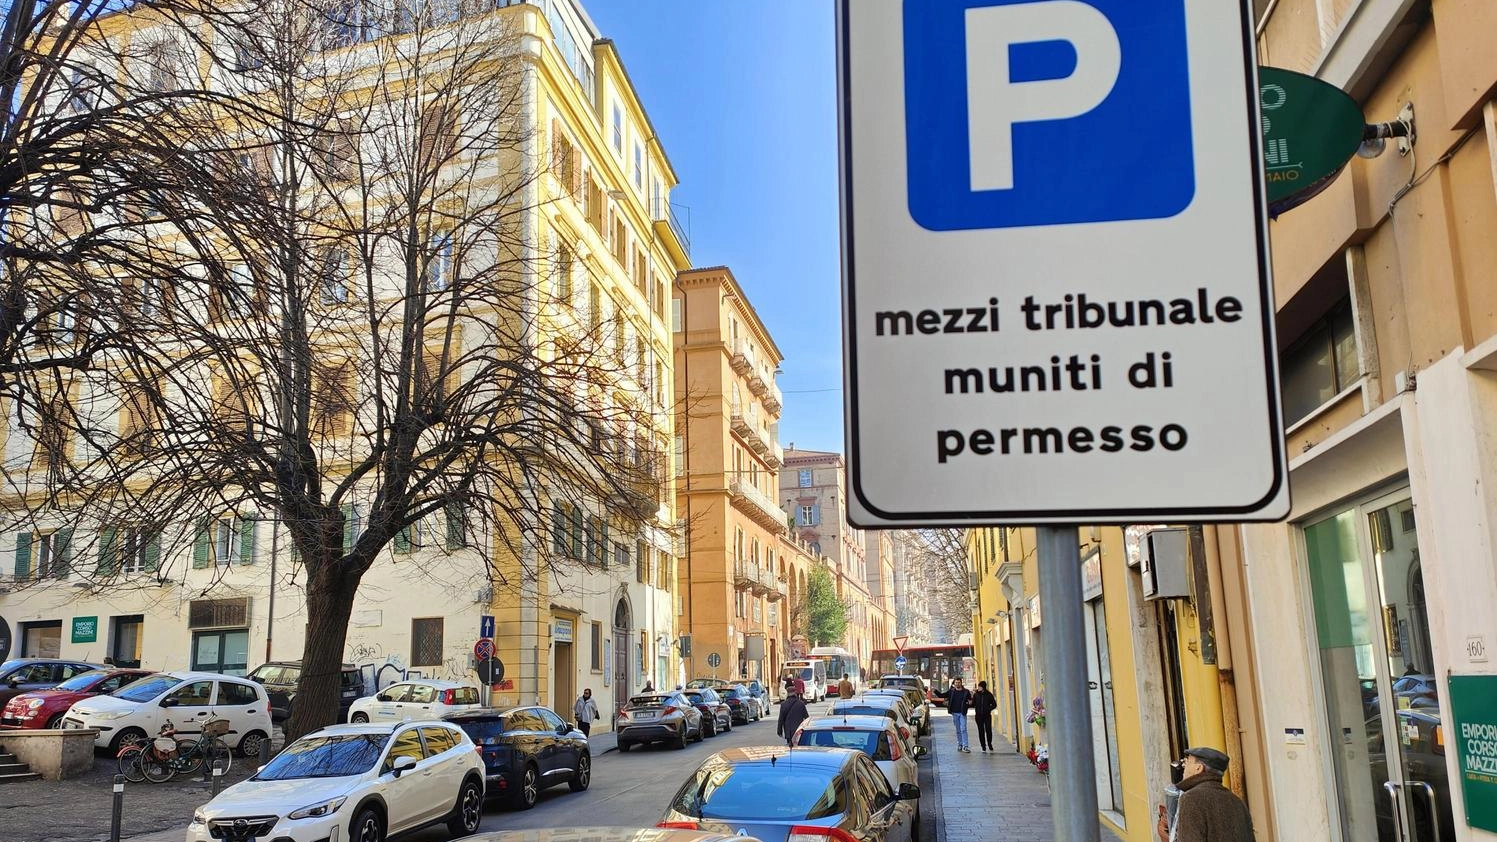 Anche Corso Mazzini è nel caos: "Stalli gialli ovunque, adesso basta"